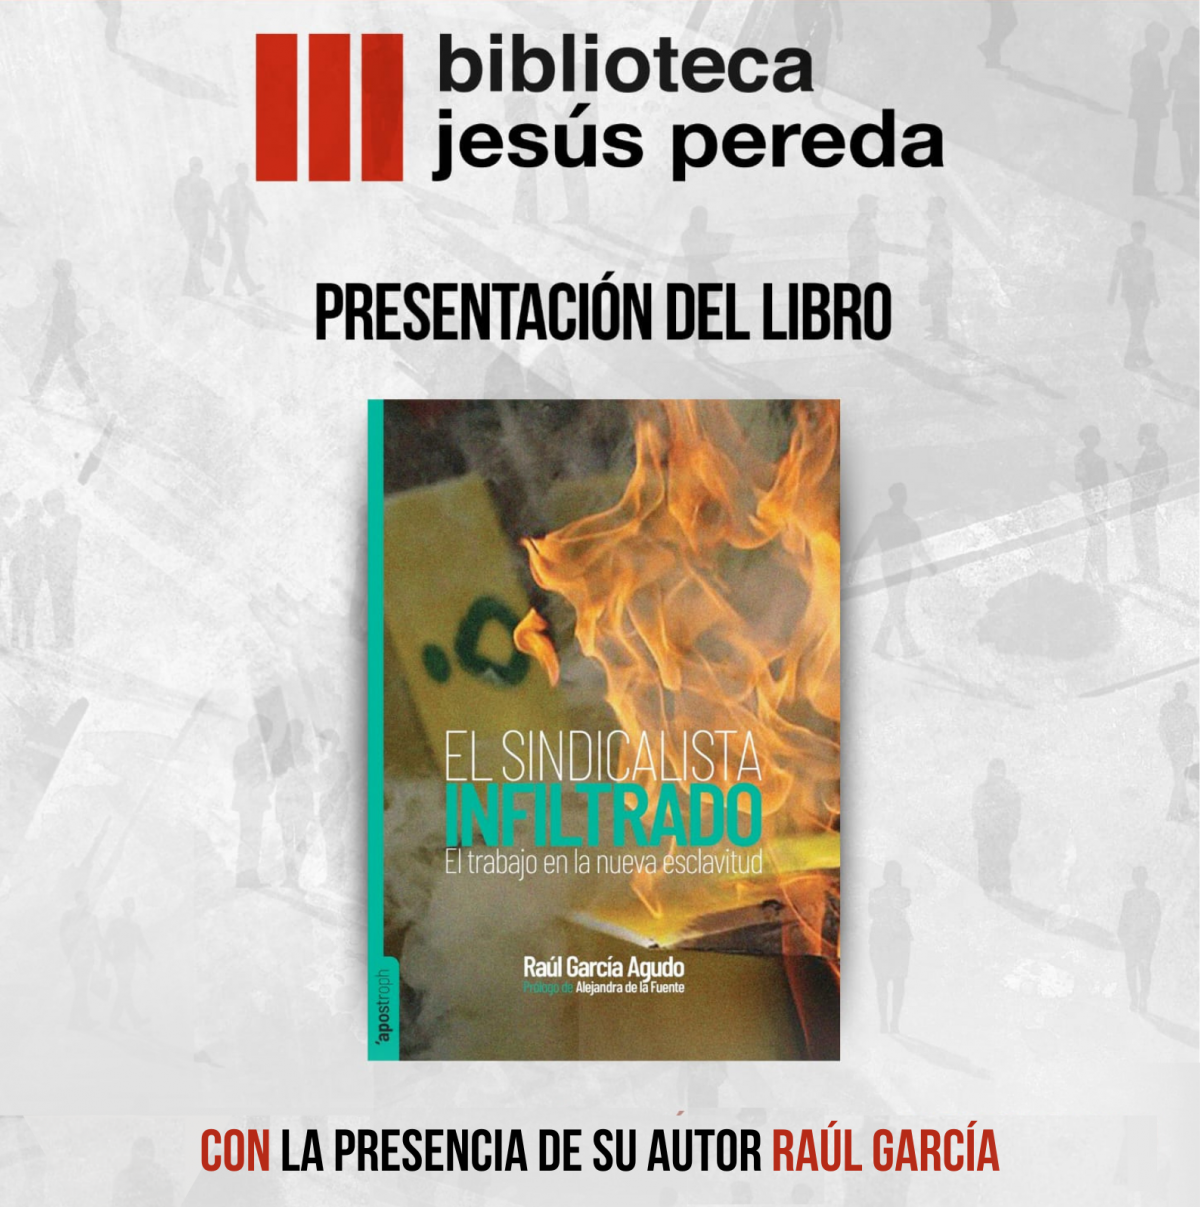 Presentación del libro en Tordesillas.